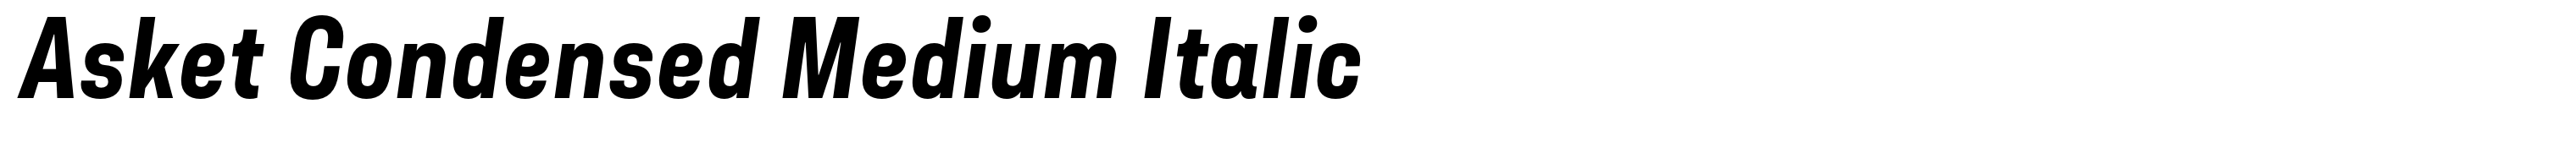 Asket Condensed Medium Italic